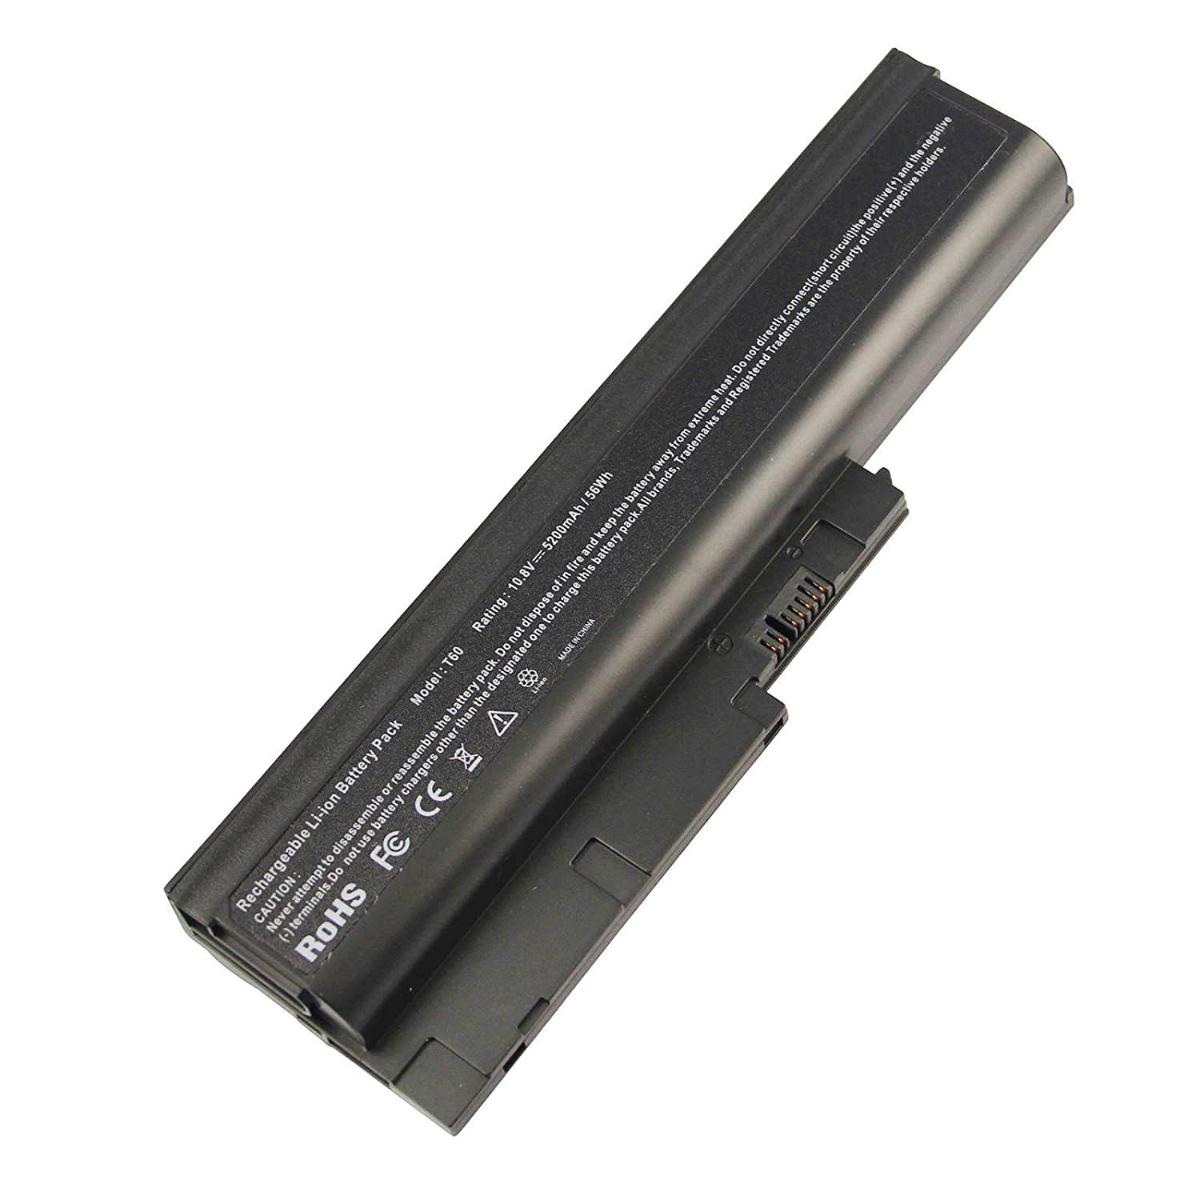 Μπαταρία Laptop - Battery for Lenovo ThinkPad T61 8893 OEM υψηλής ποιότητας - high quality (Κωδ.1-BAT0106(4.4Ah))